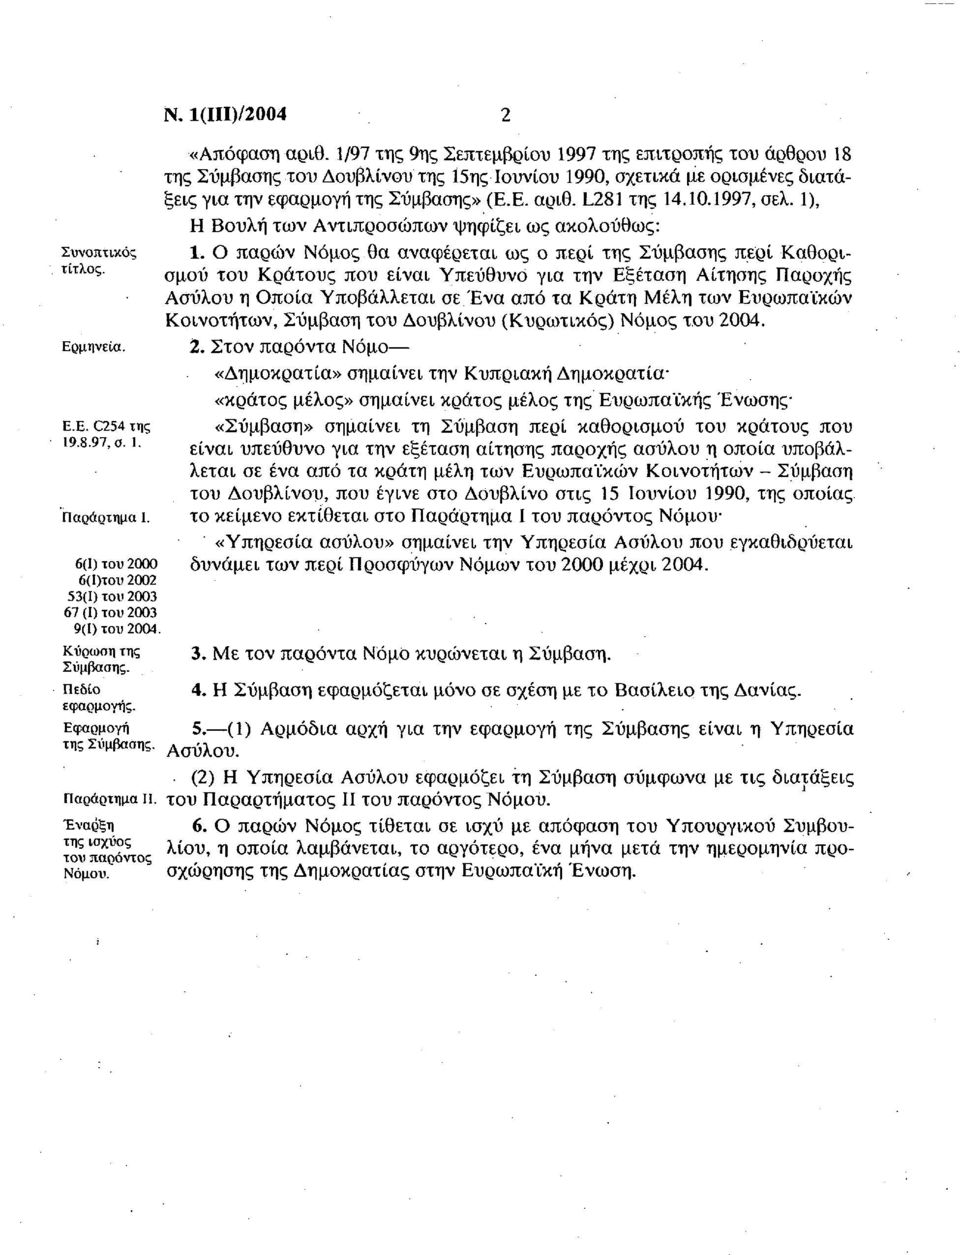 1/97 της 9ης Σεπτεμβρίου 1997 της επιτροπής του άρθρου 18 της Σύμβασης του Δουβλίνου της 15ης Ιουνίου 1990, σχετικά με ορισμένες διατάξεις για την εφαρμογή της Σύμβασης» (Ε.Ε. αριθ. L281 της 14.10.